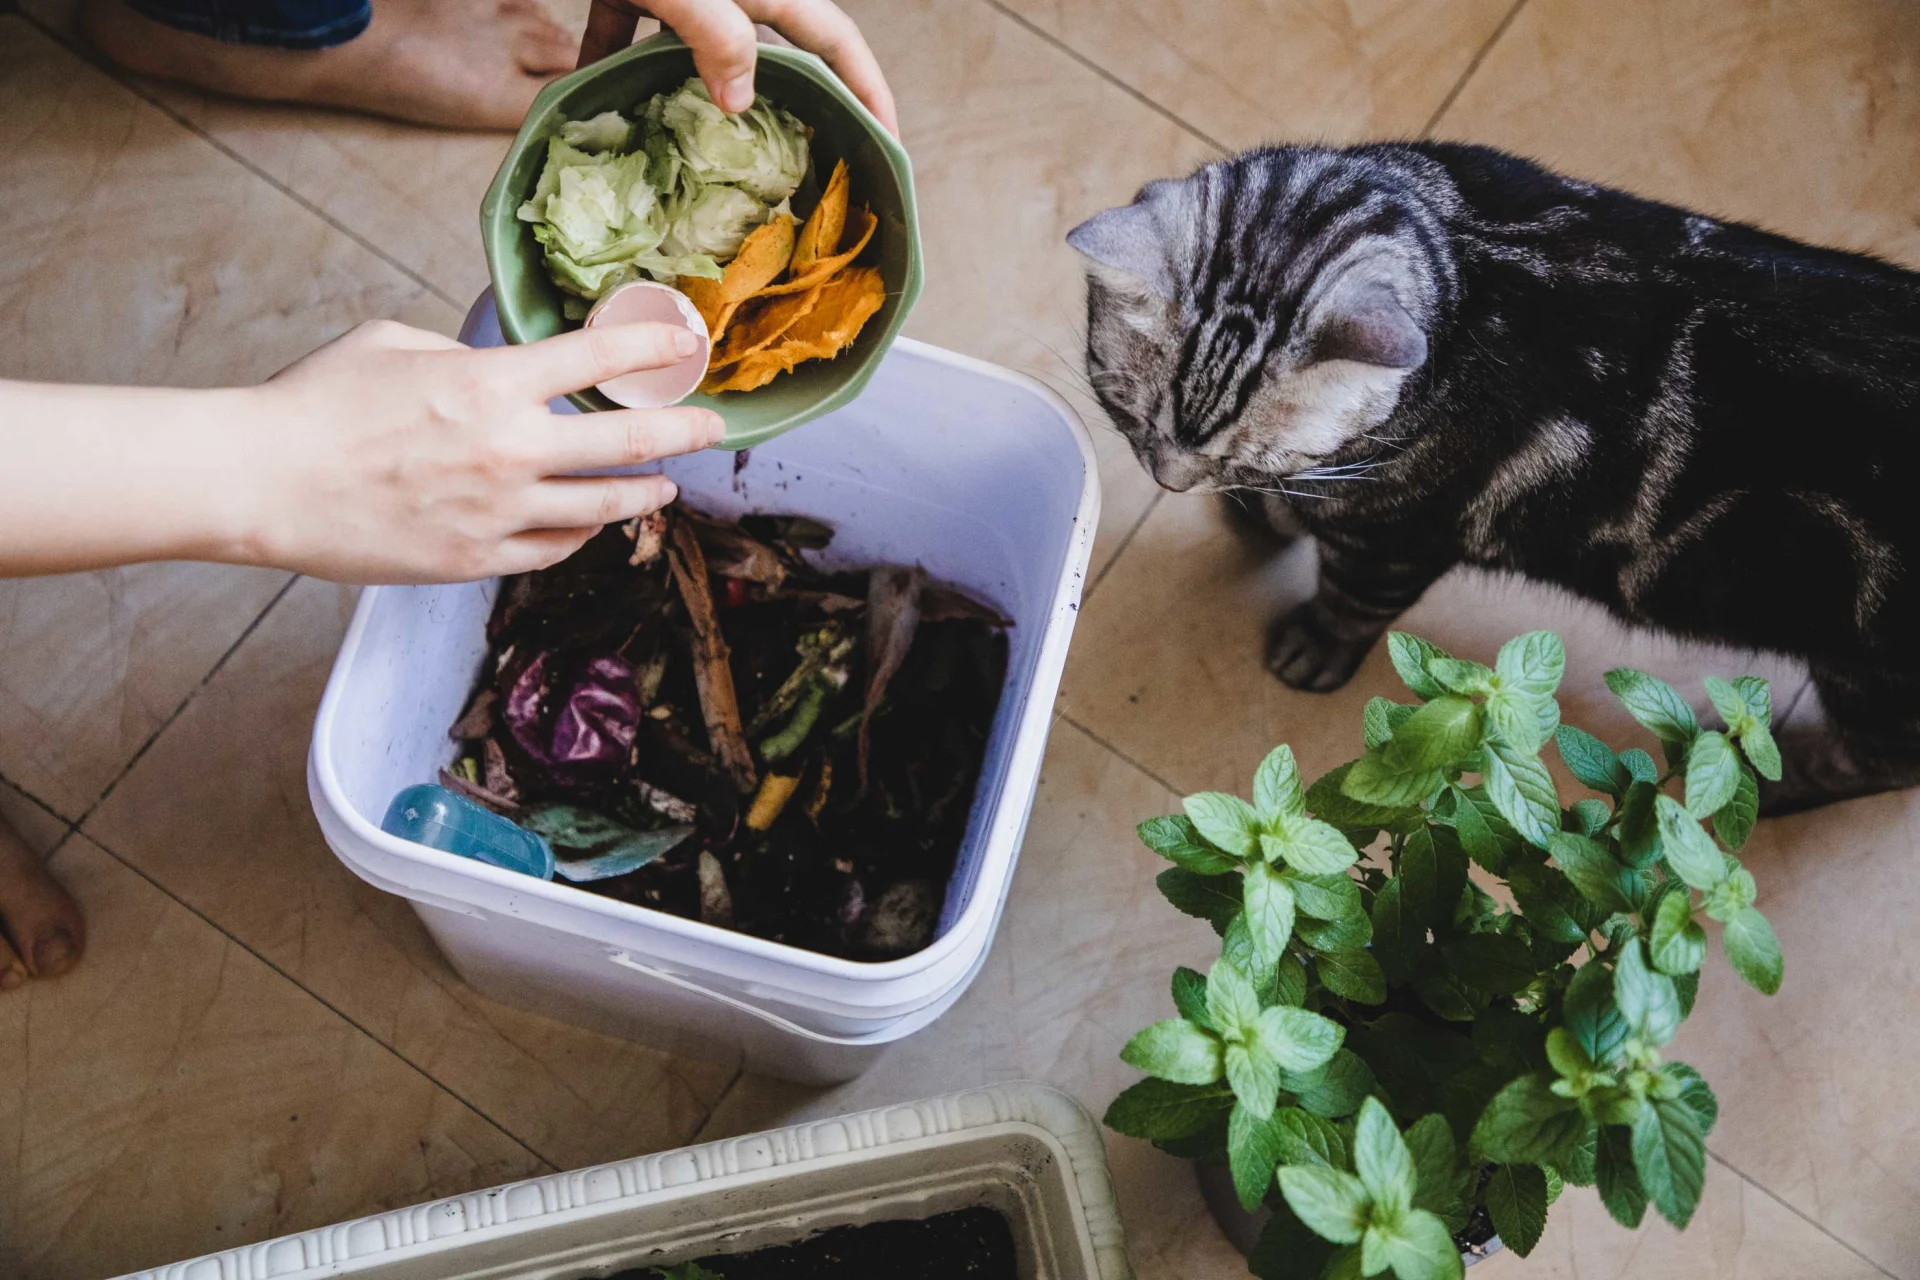 Una donna getta gli avanzi di cibo in un contenitore per il compost, accanto a lei un gatto curioso osserva